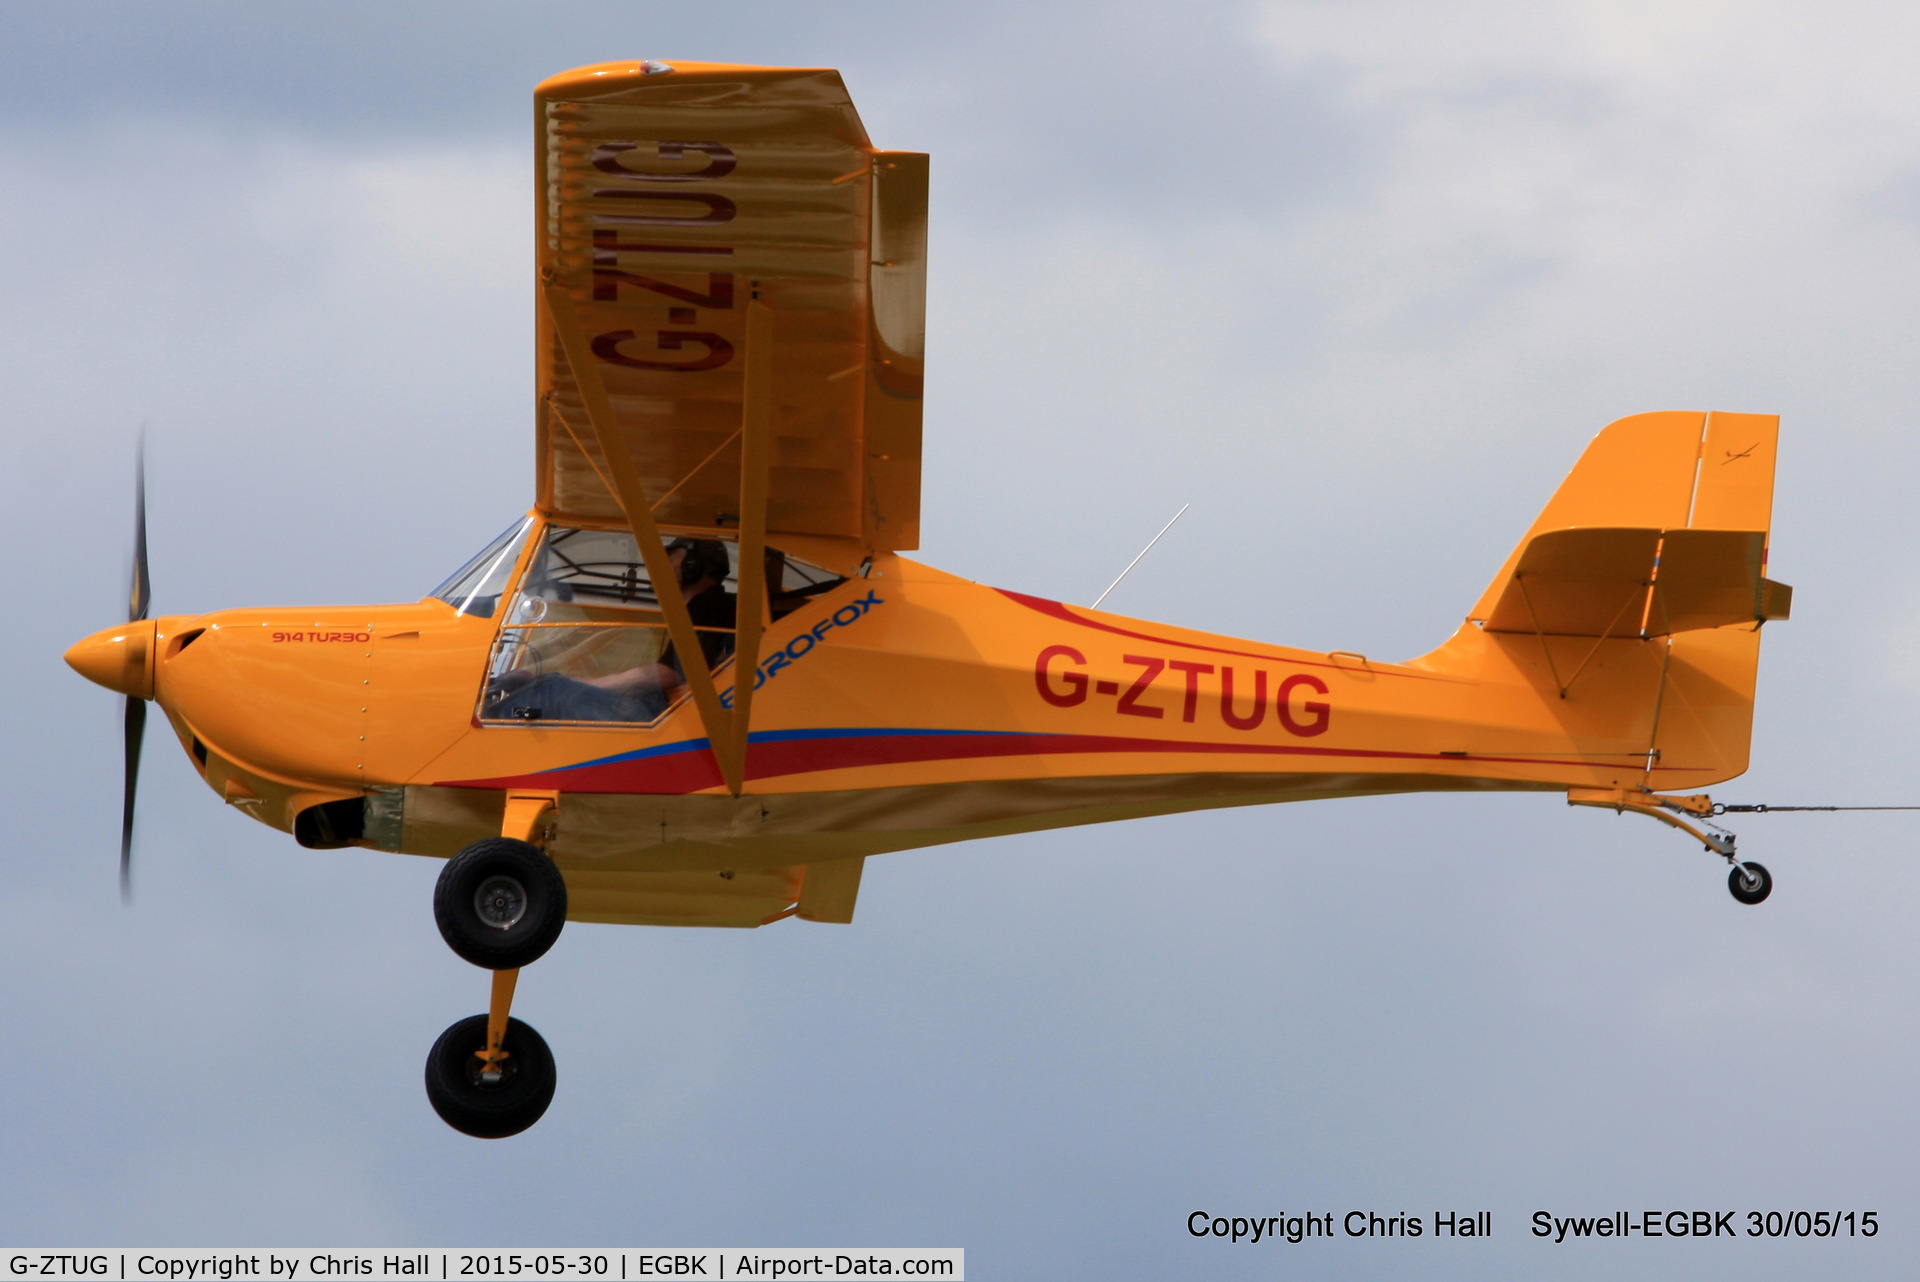 G-ZTUG, 2014 Eurofox 914 C/N LAA 376-15215, at Aeroexpo 2015